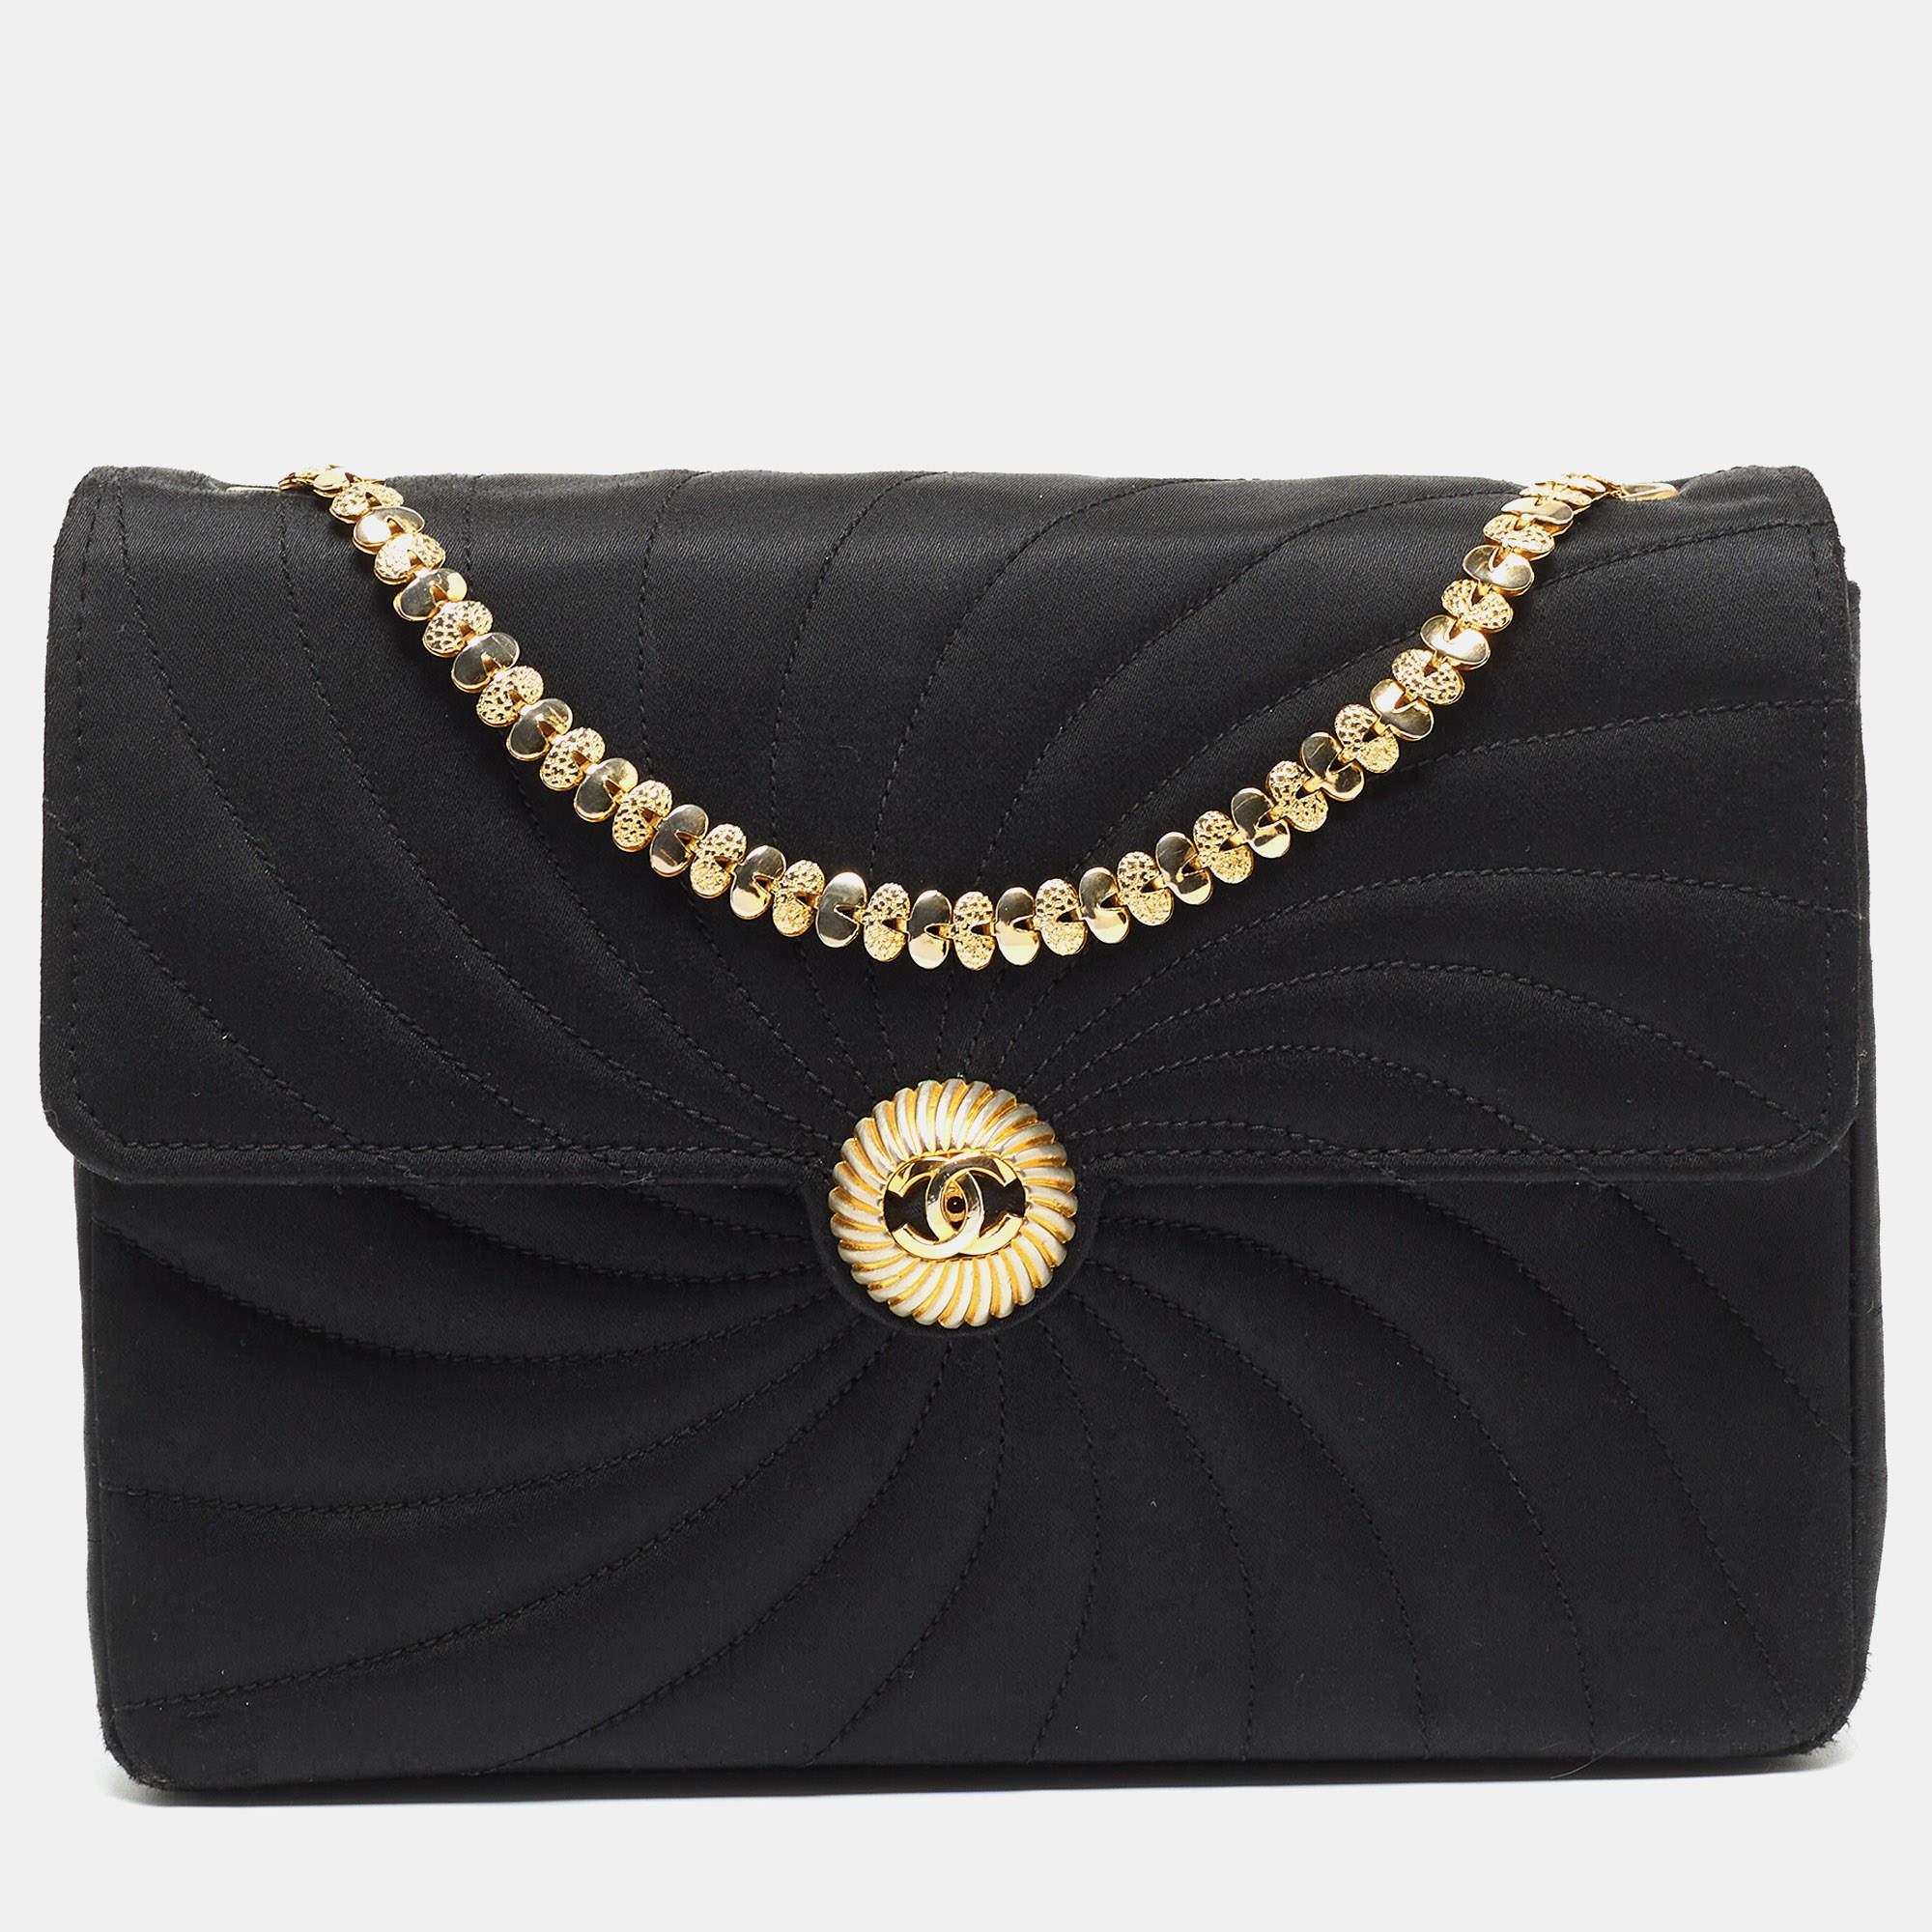 Chanel Look Alike Bags Amazon | americanlycetuffschool.edu.pk